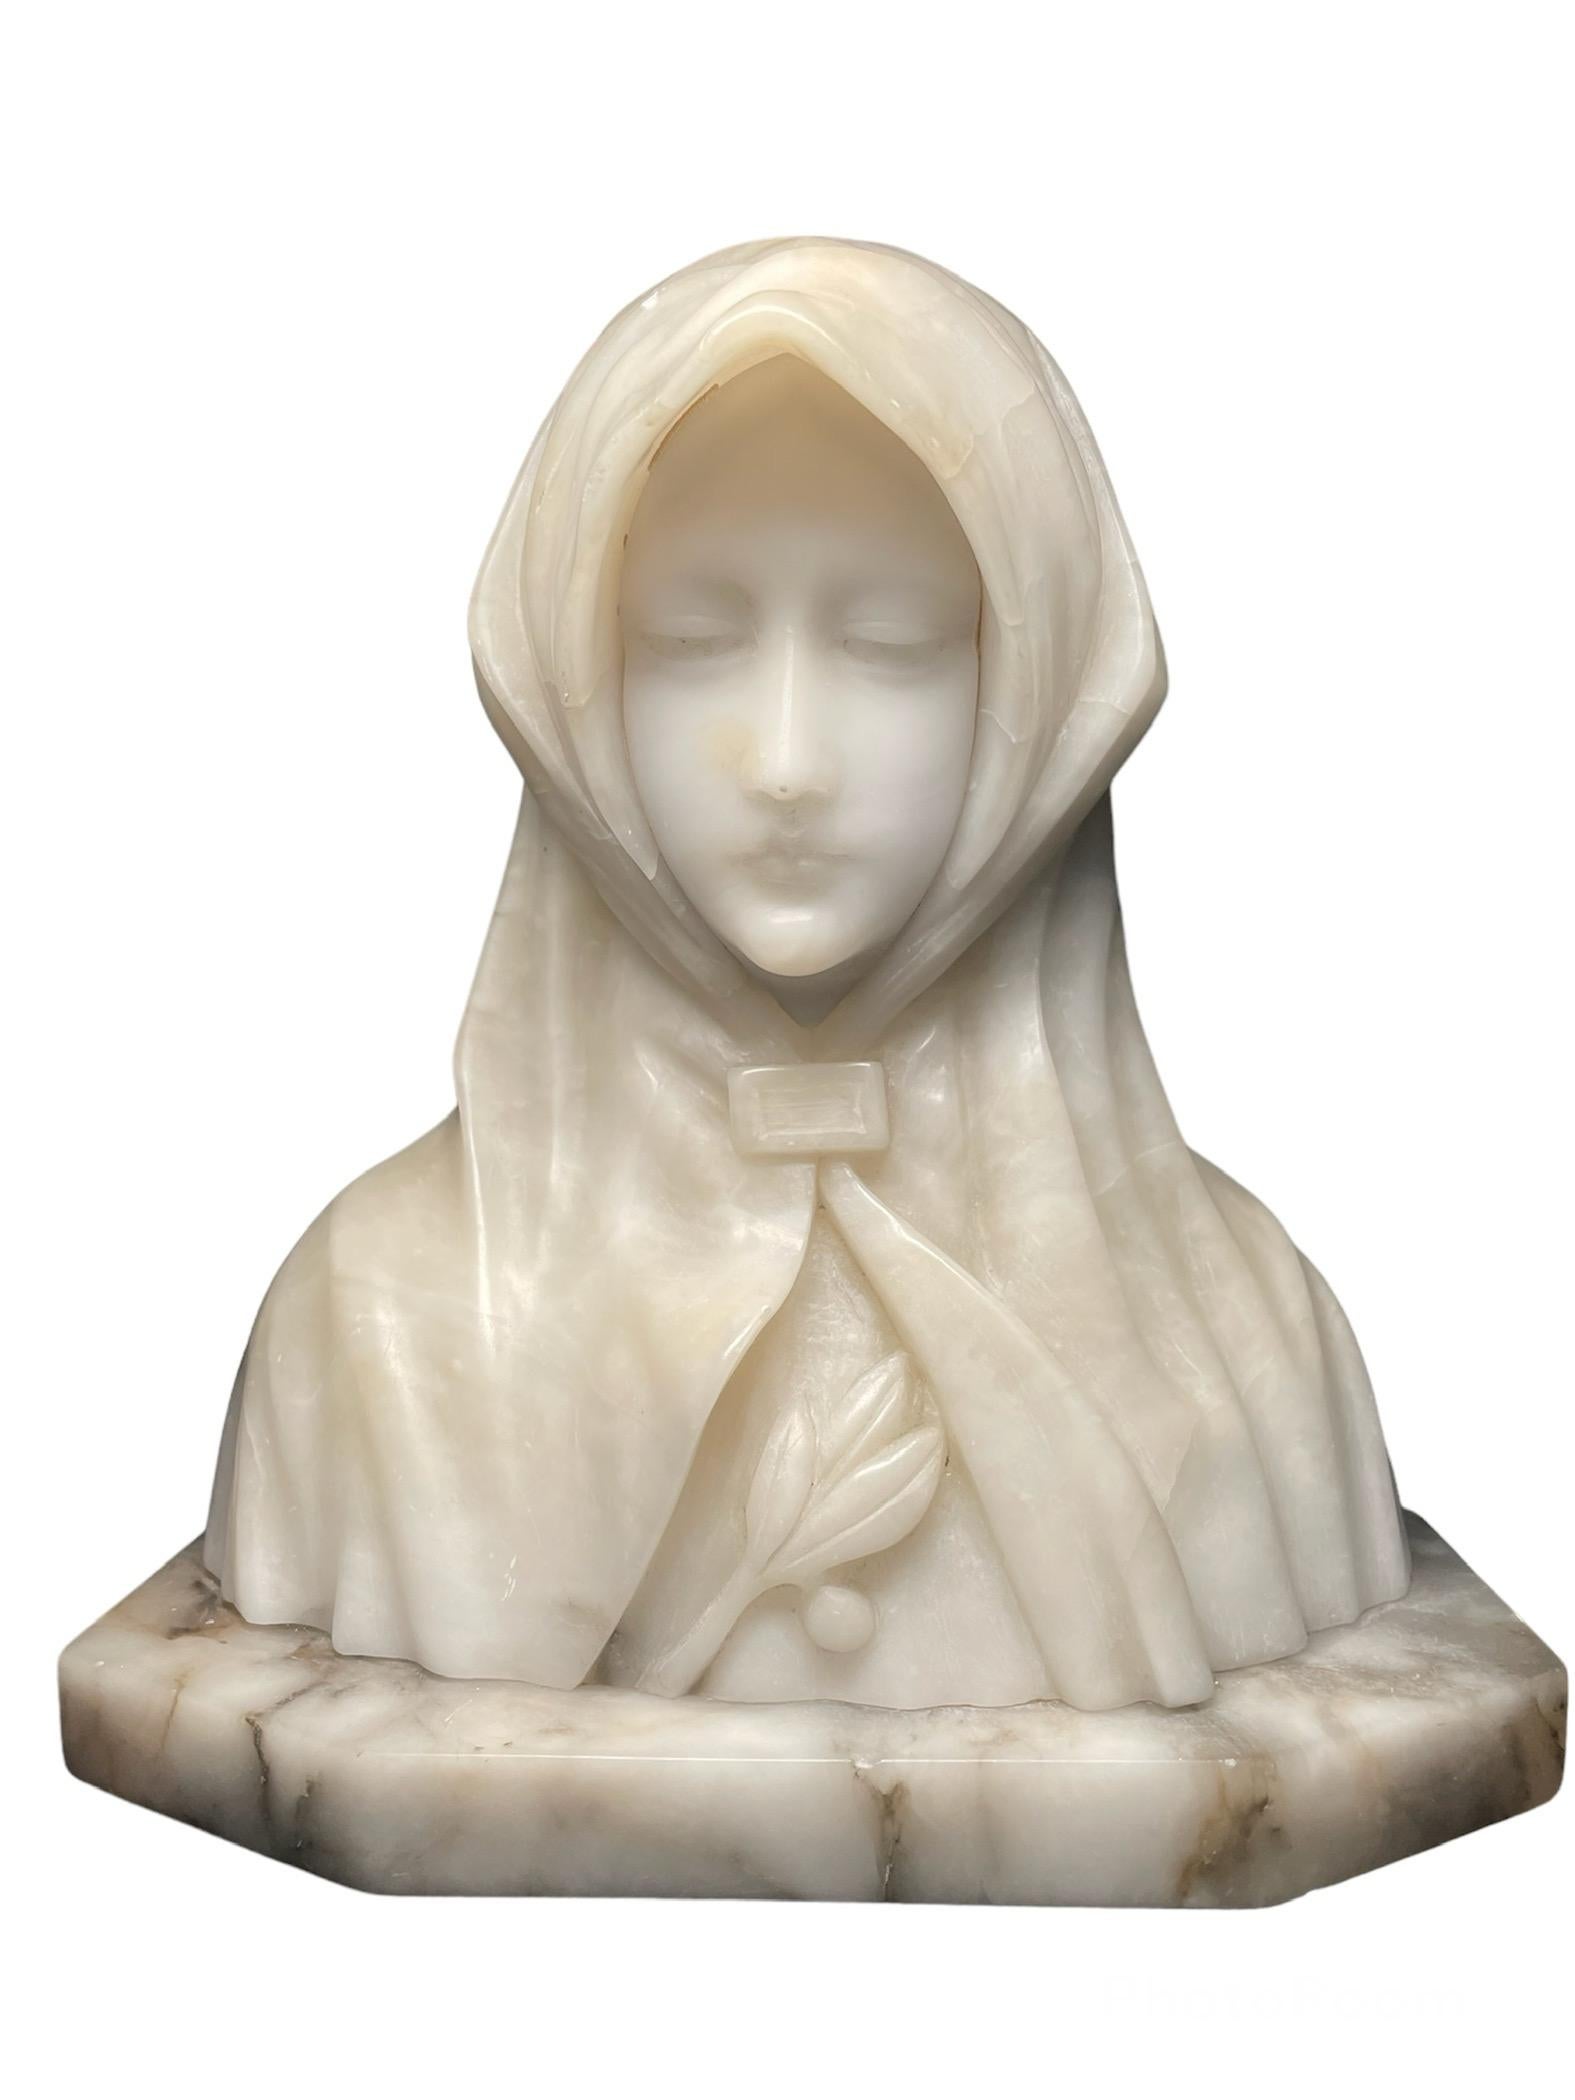 Dies ist eine Alabaster- und Marmorbüste der Heiligen Klara von Assisi. Es stellt eine junge Frau dar, deren Kopf/Gesicht mit einem Mantel bedeckt ist. Sie blickt nach unten, ganz friedlich, während sie zu Gott zu beten scheint. Ein Olivenzweig